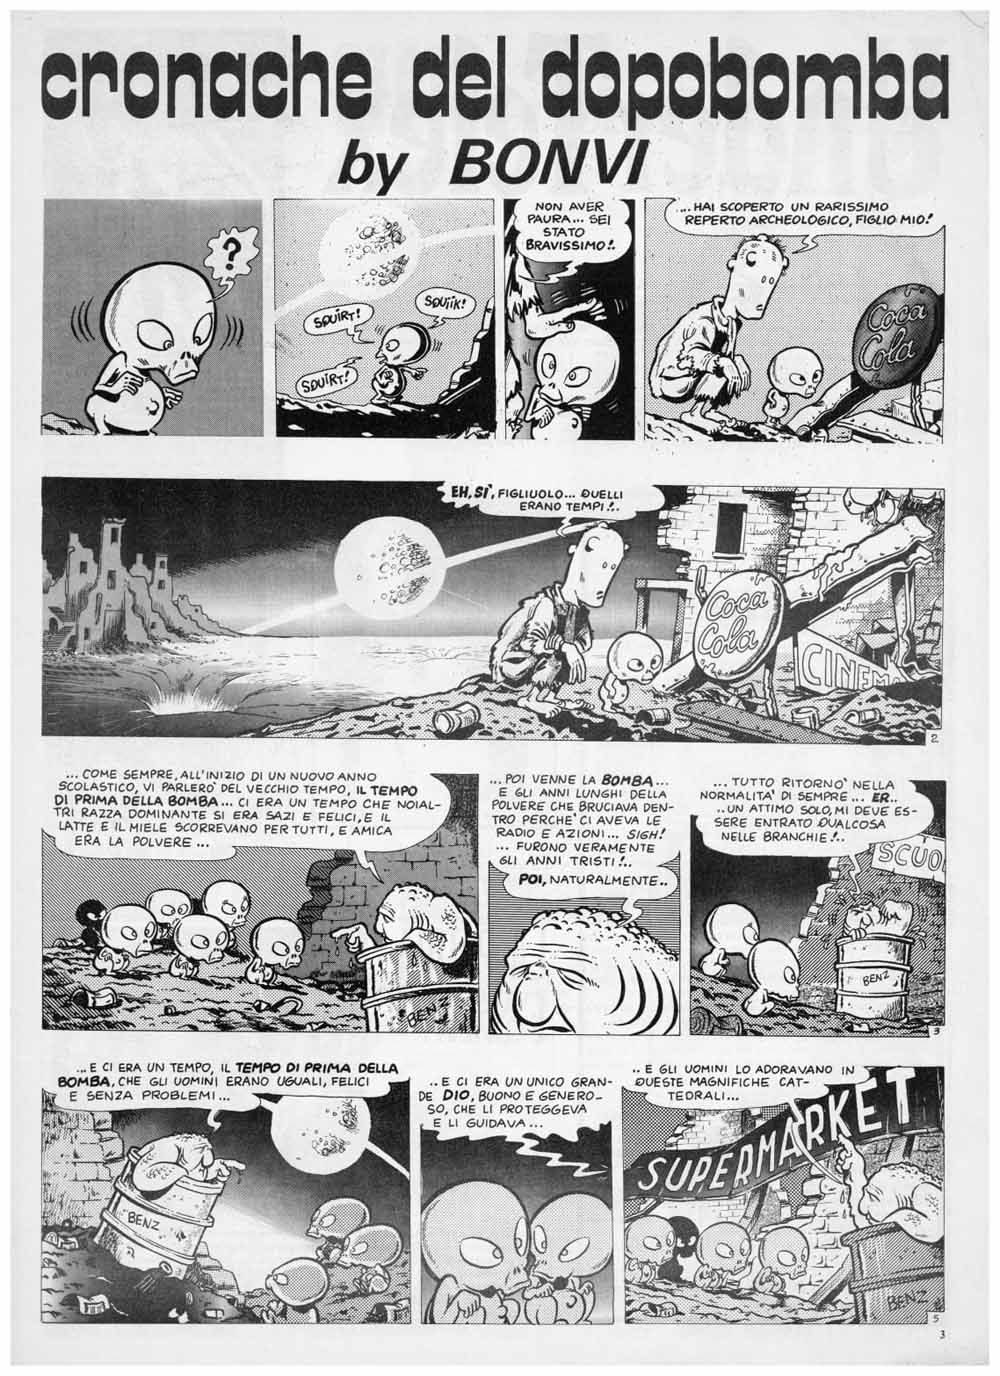 fumetti famosi cronache del dopobomba bonvi